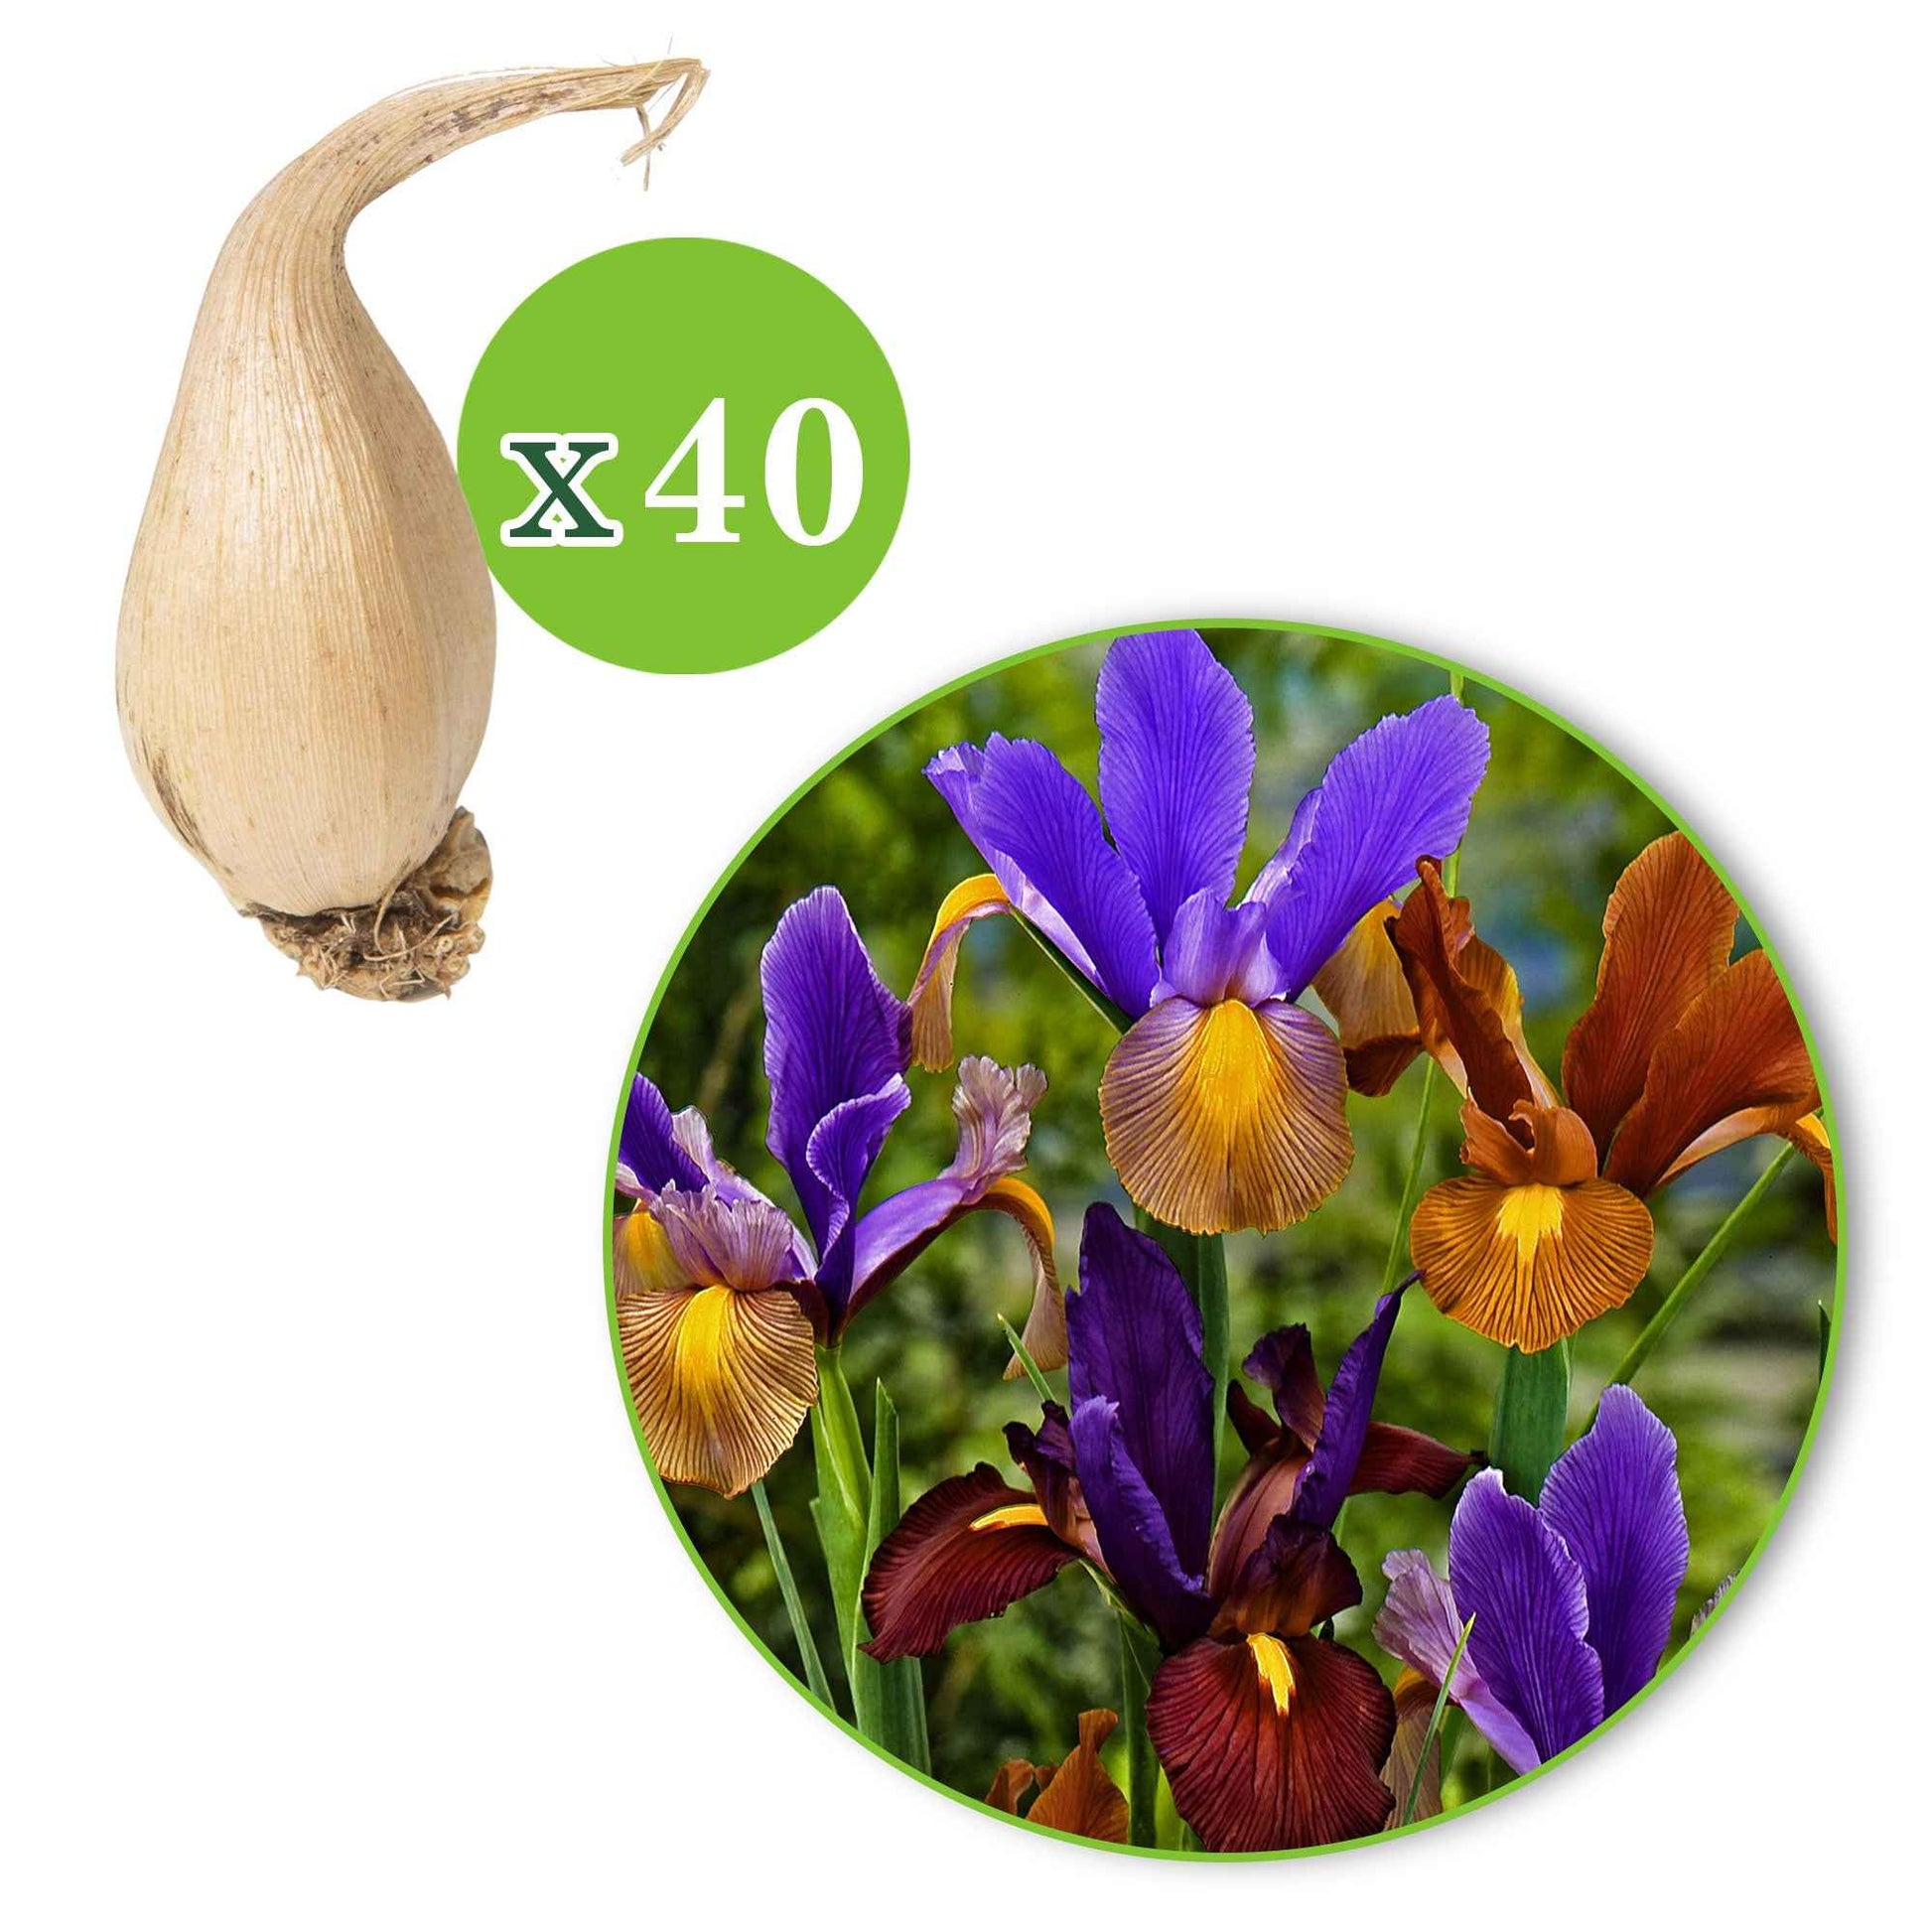 Iris de Hollande en mélange - 1x emballage (40 bulbes de fleurs) - Arbustes à papillons et plantes mellifères - undefined